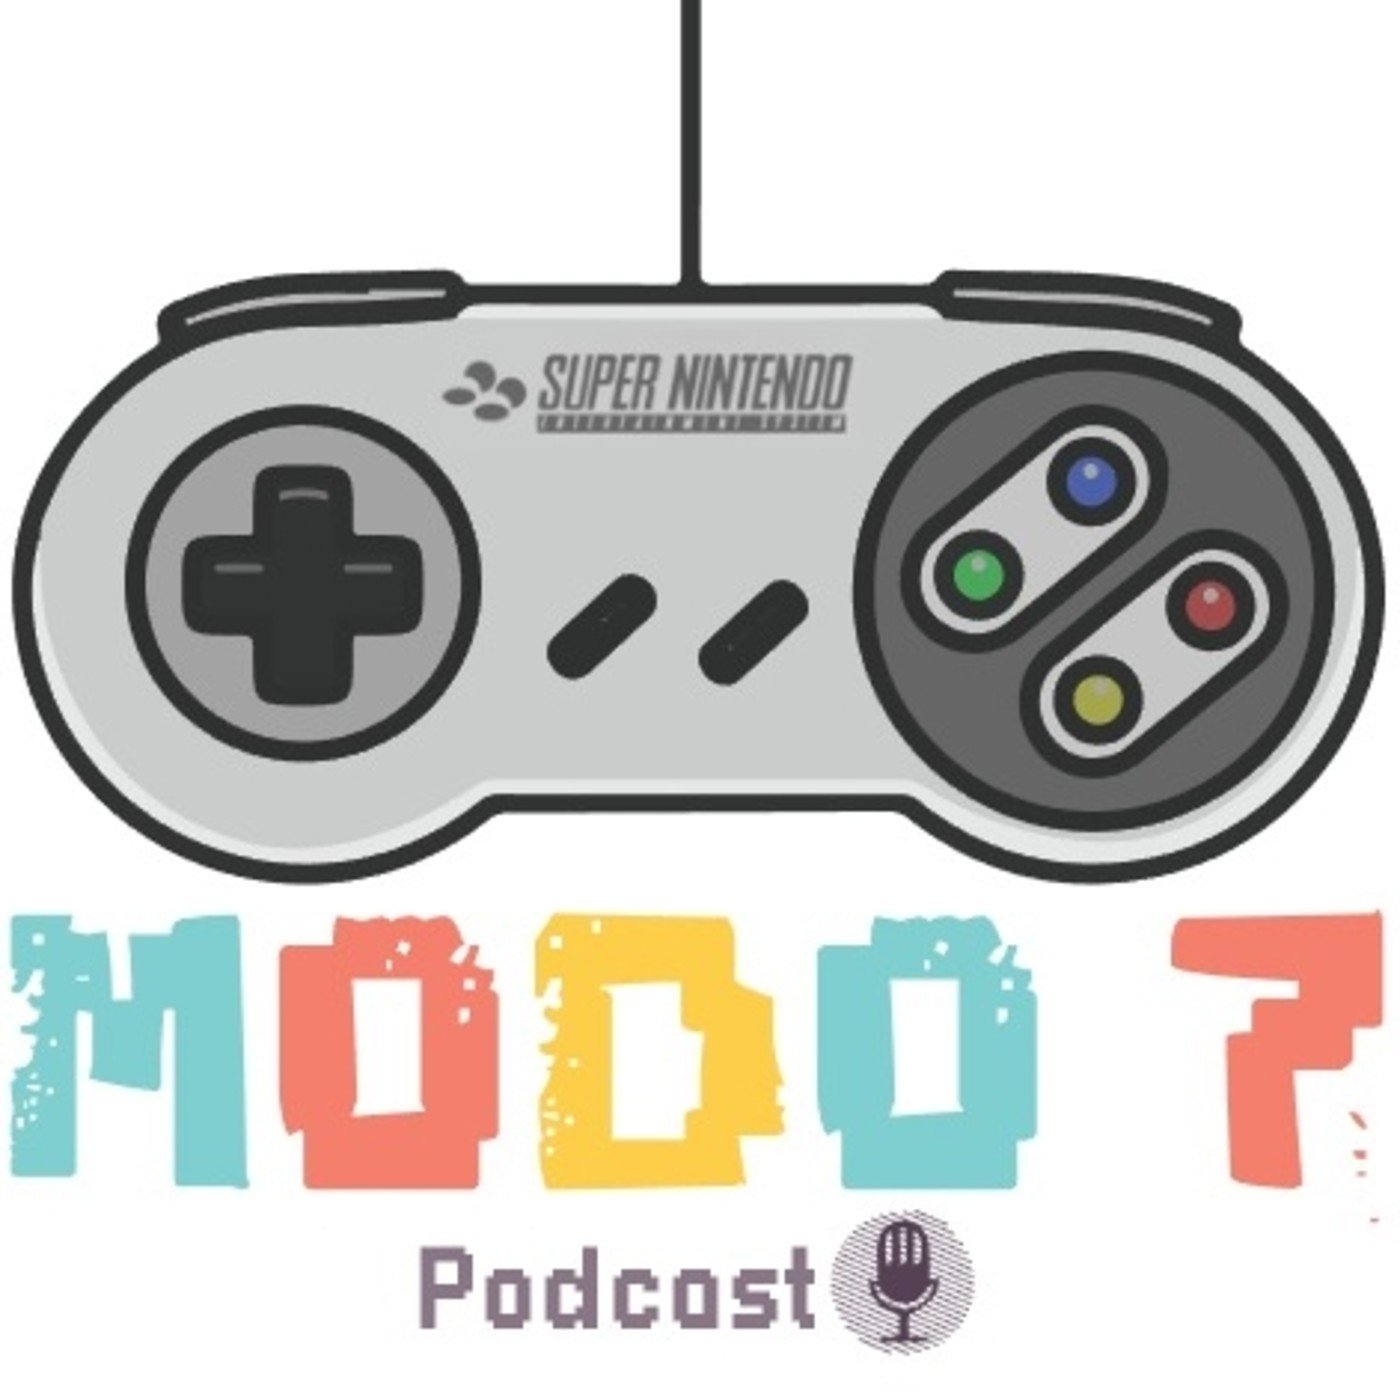 Modo 7 Podcast